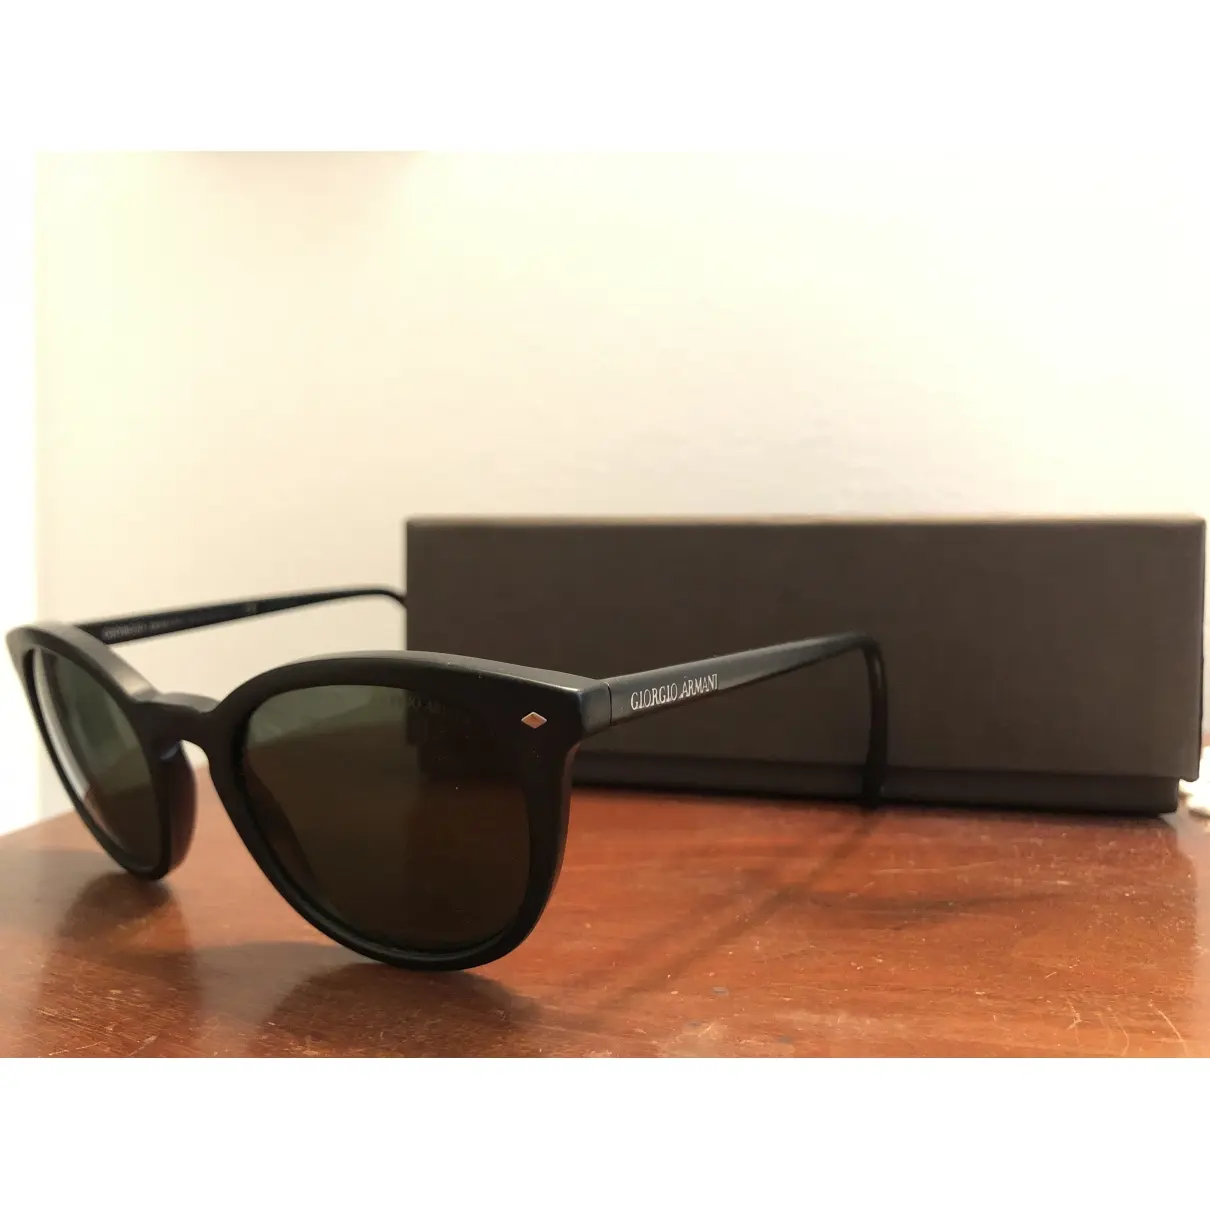 Giorgio Armani Sunglasses for sale